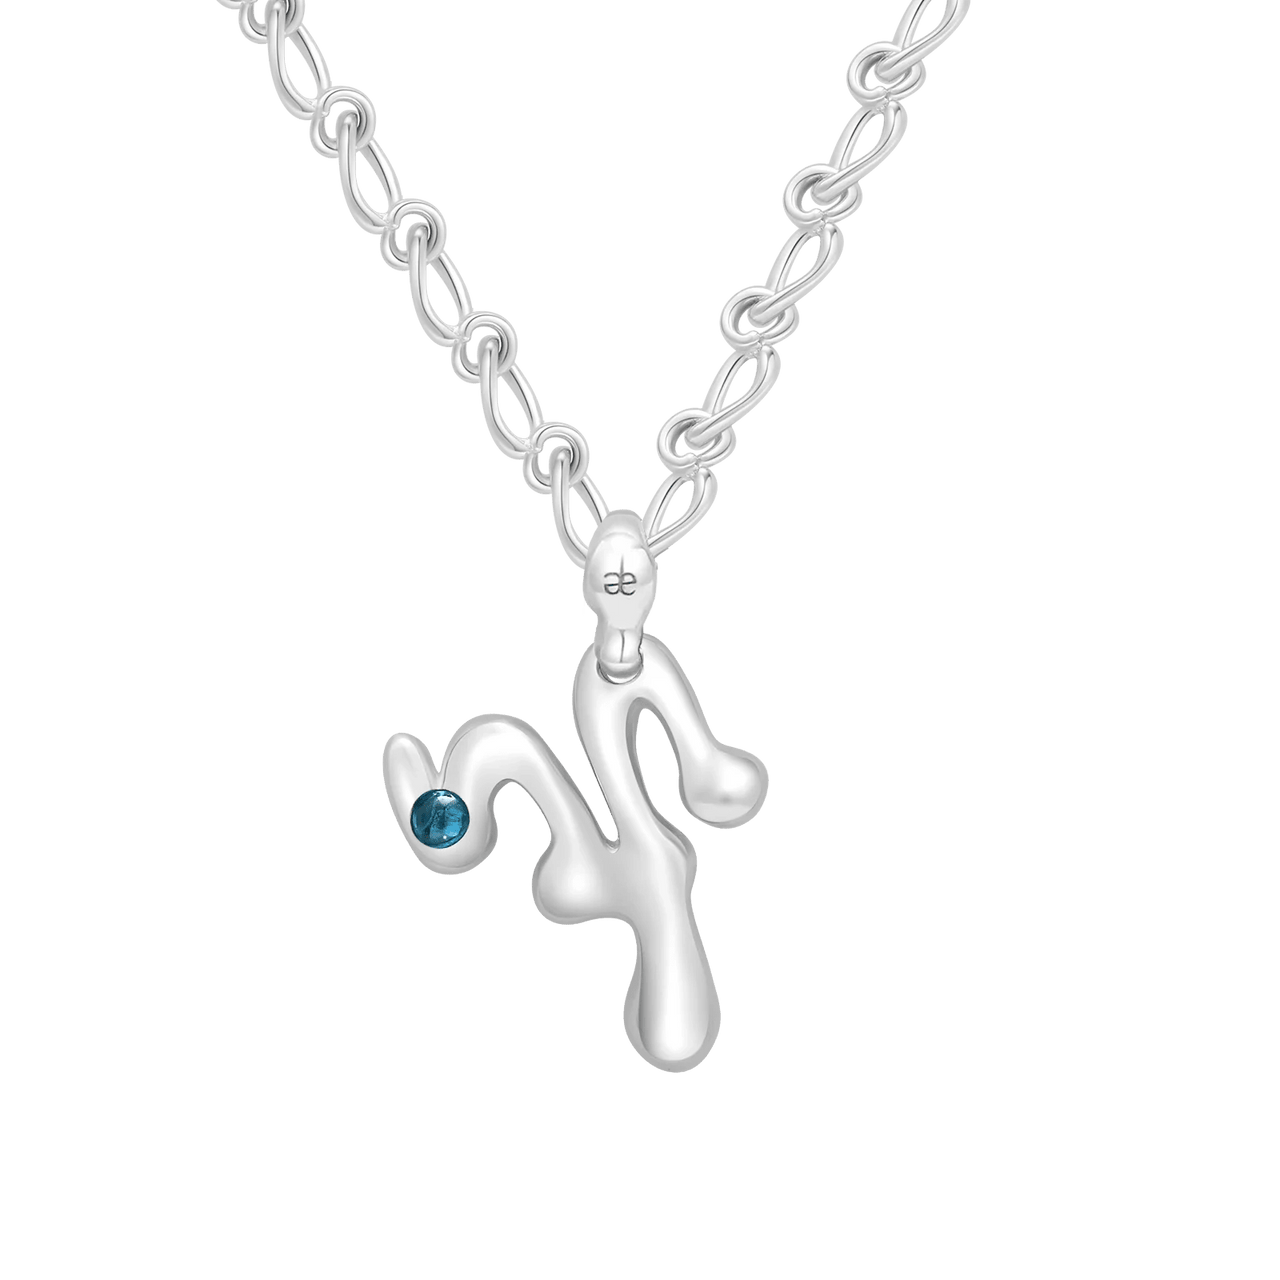 Aquarius Gemstone Pendant on Eclipse Necklace - Graedance